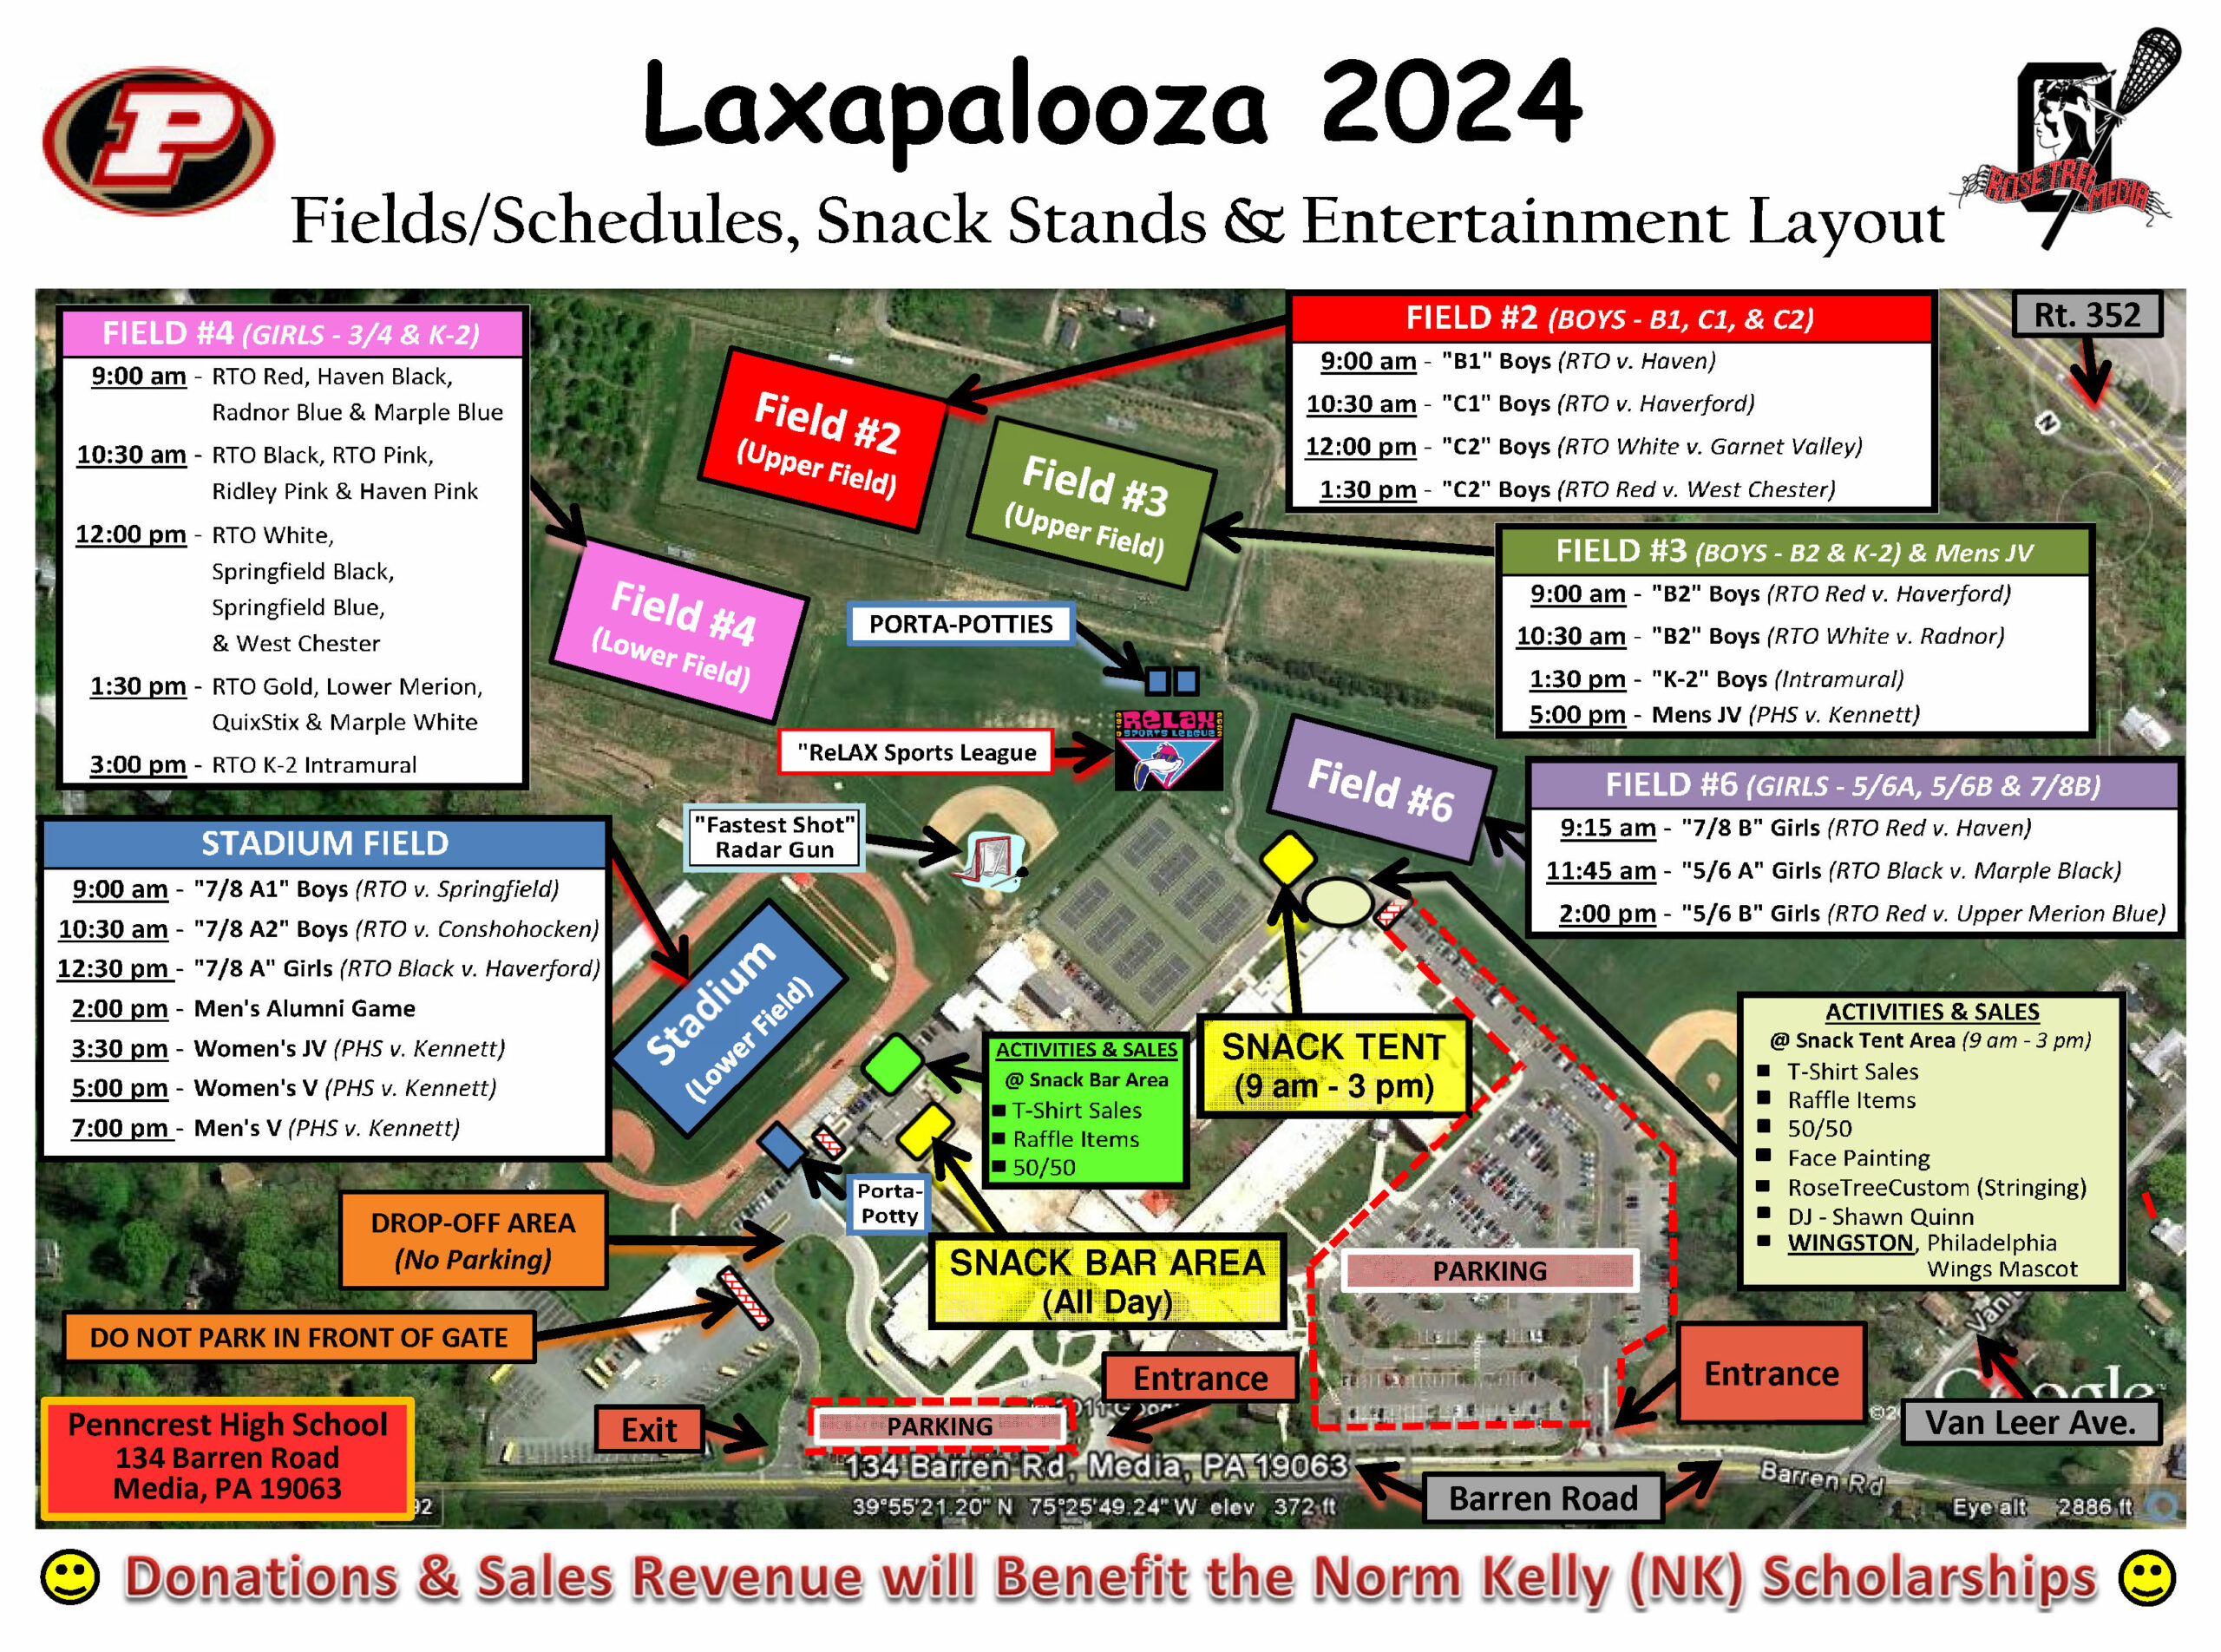 Laxapalooza Field Map & Schedule_2024 (FINAL)